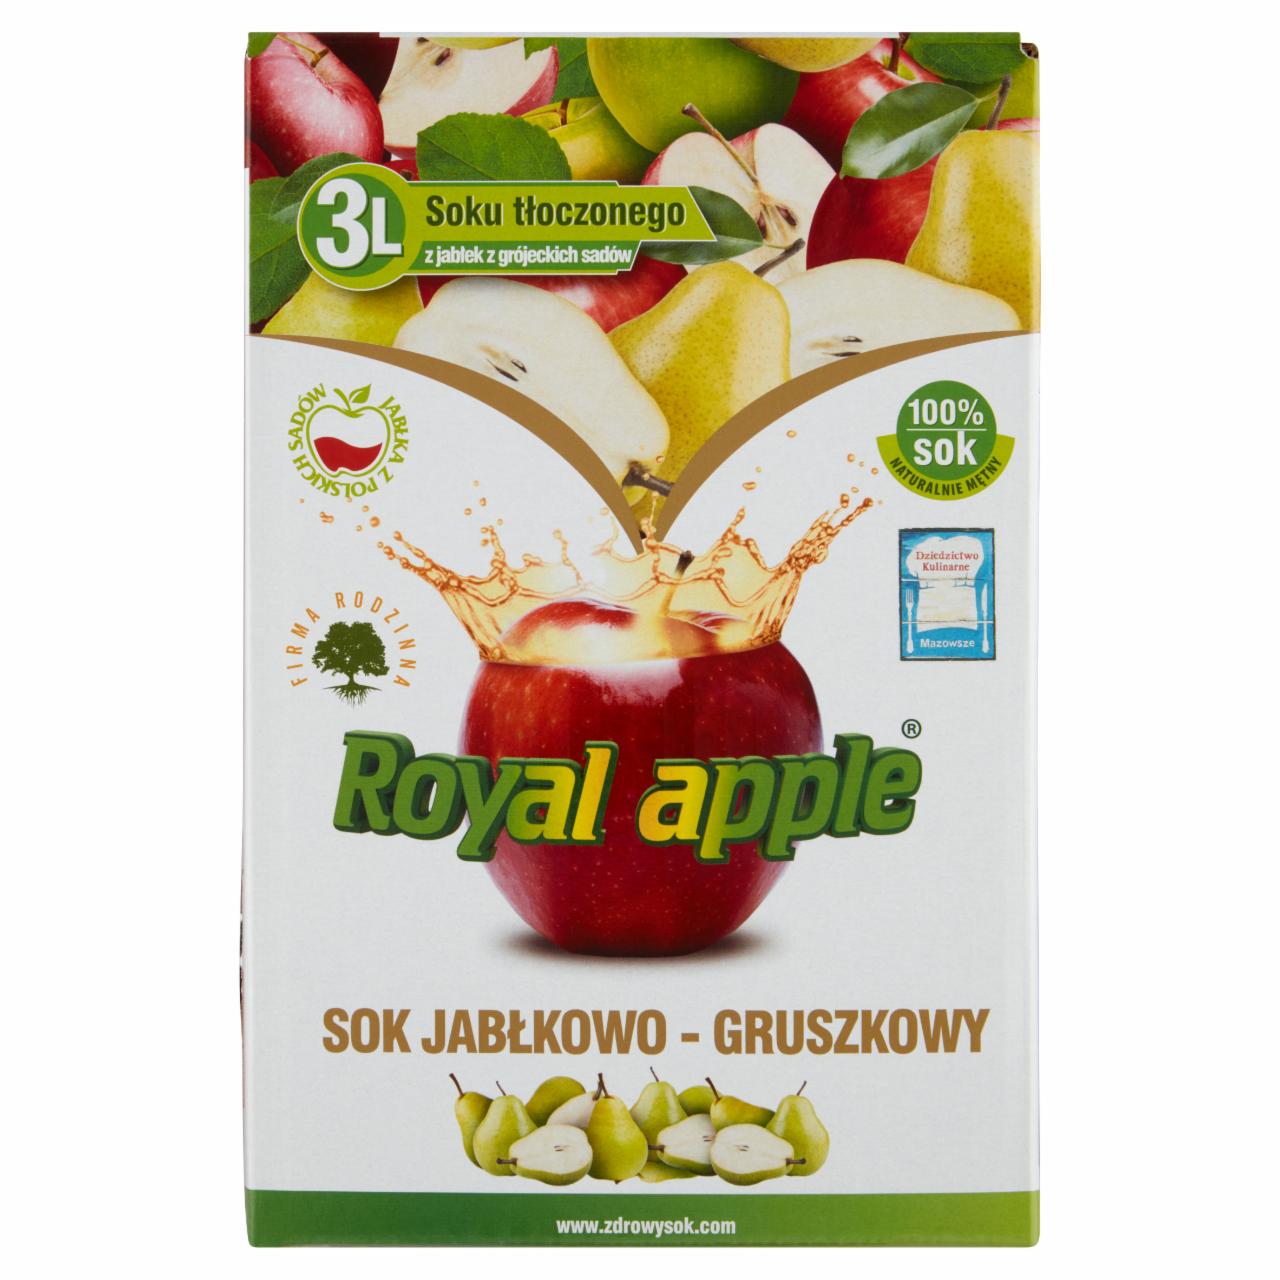 Zdjęcia - Royal apple Sok jabłkowo-gruszkowy 3 l